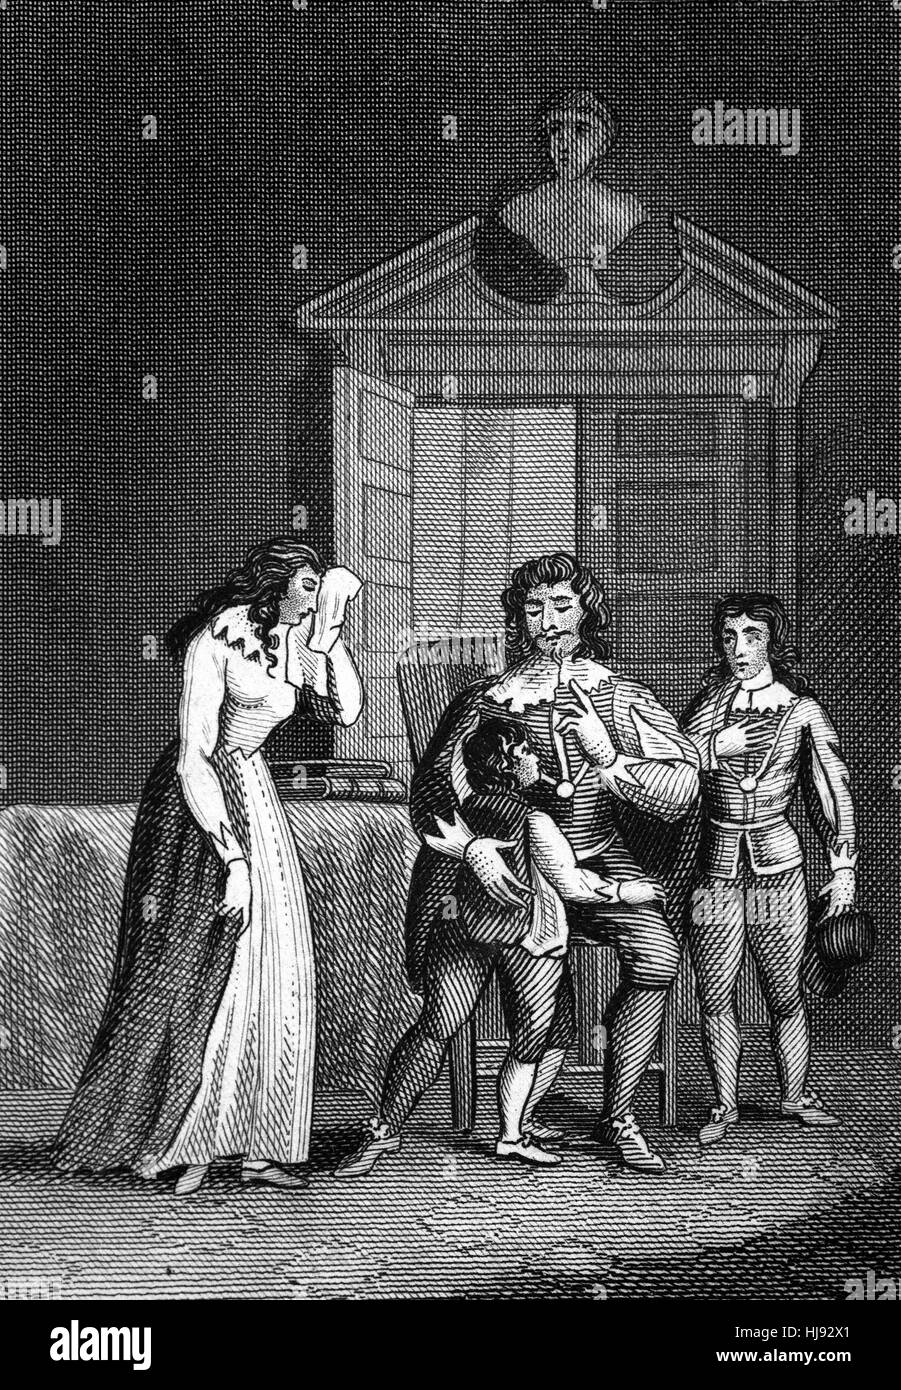 La decapitación del rey Carlos I (1600 - 1649) fue programado para el Martes, 30 de enero de 1649. Dos de sus hijos fueron autorizados a visitarlo el 29 de enero y le rogó un lloroso adiós. Después de su muerte, permanecían en Inglaterra bajo el control de los parlamentarios. Foto de stock